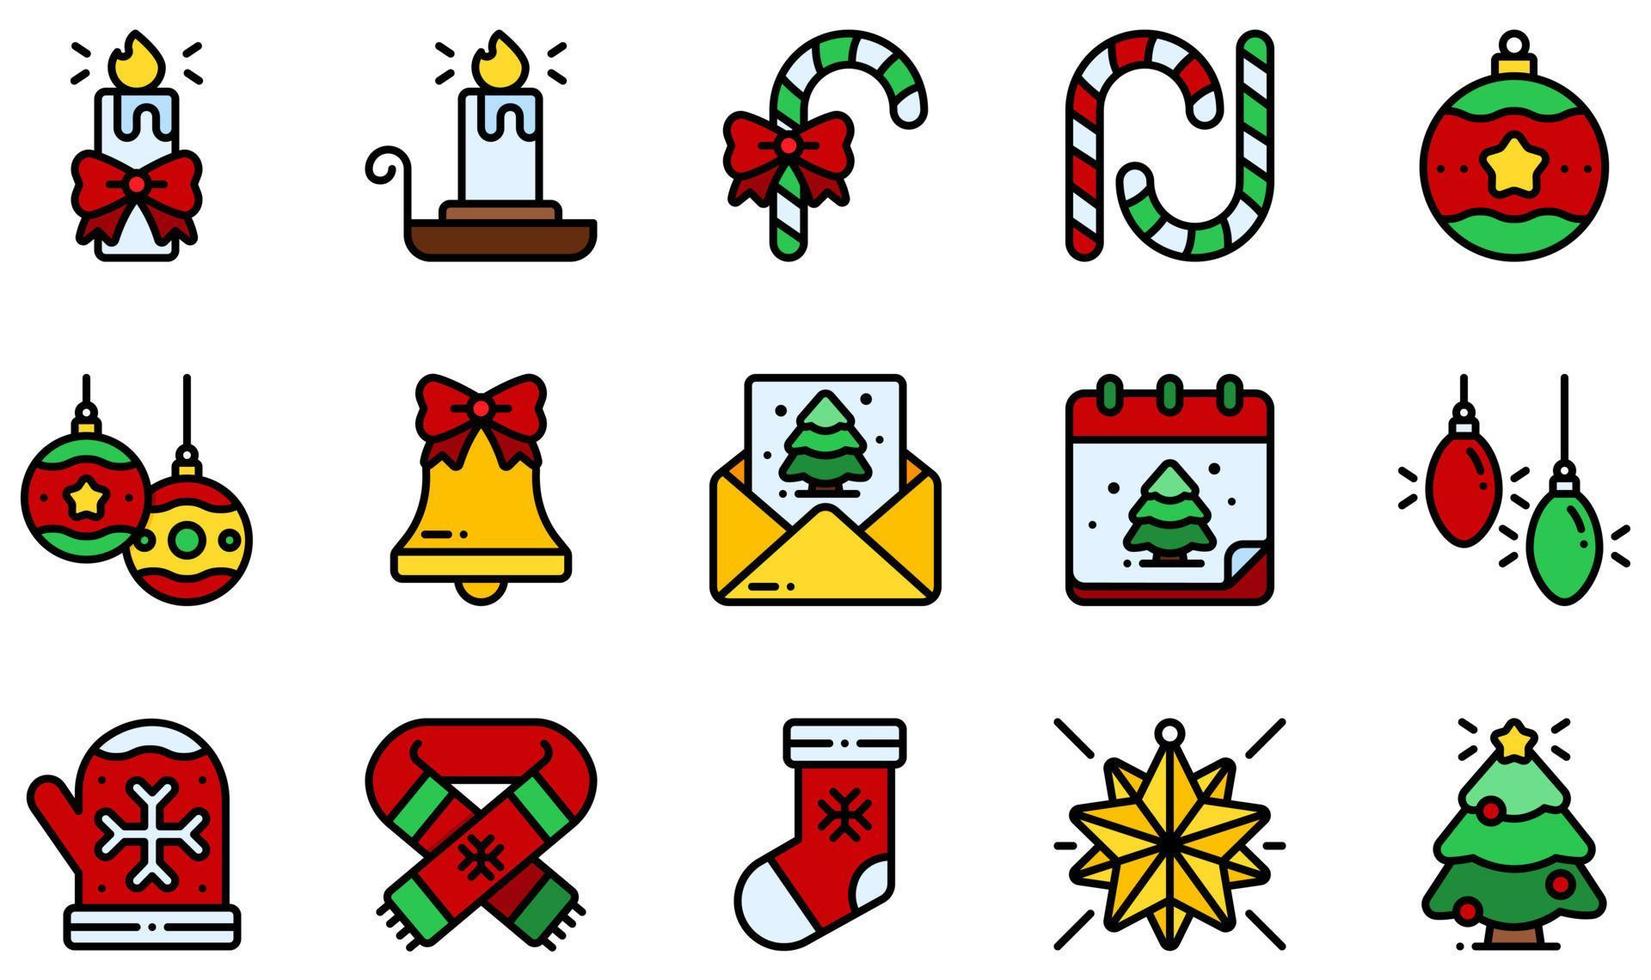 conjunto de iconos vectoriales relacionados con la decoración navideña. contiene íconos como velas, candelabros, bastones de caramelo, campanas navideñas, tarjetas navideñas, bufandas navideñas y más. vector